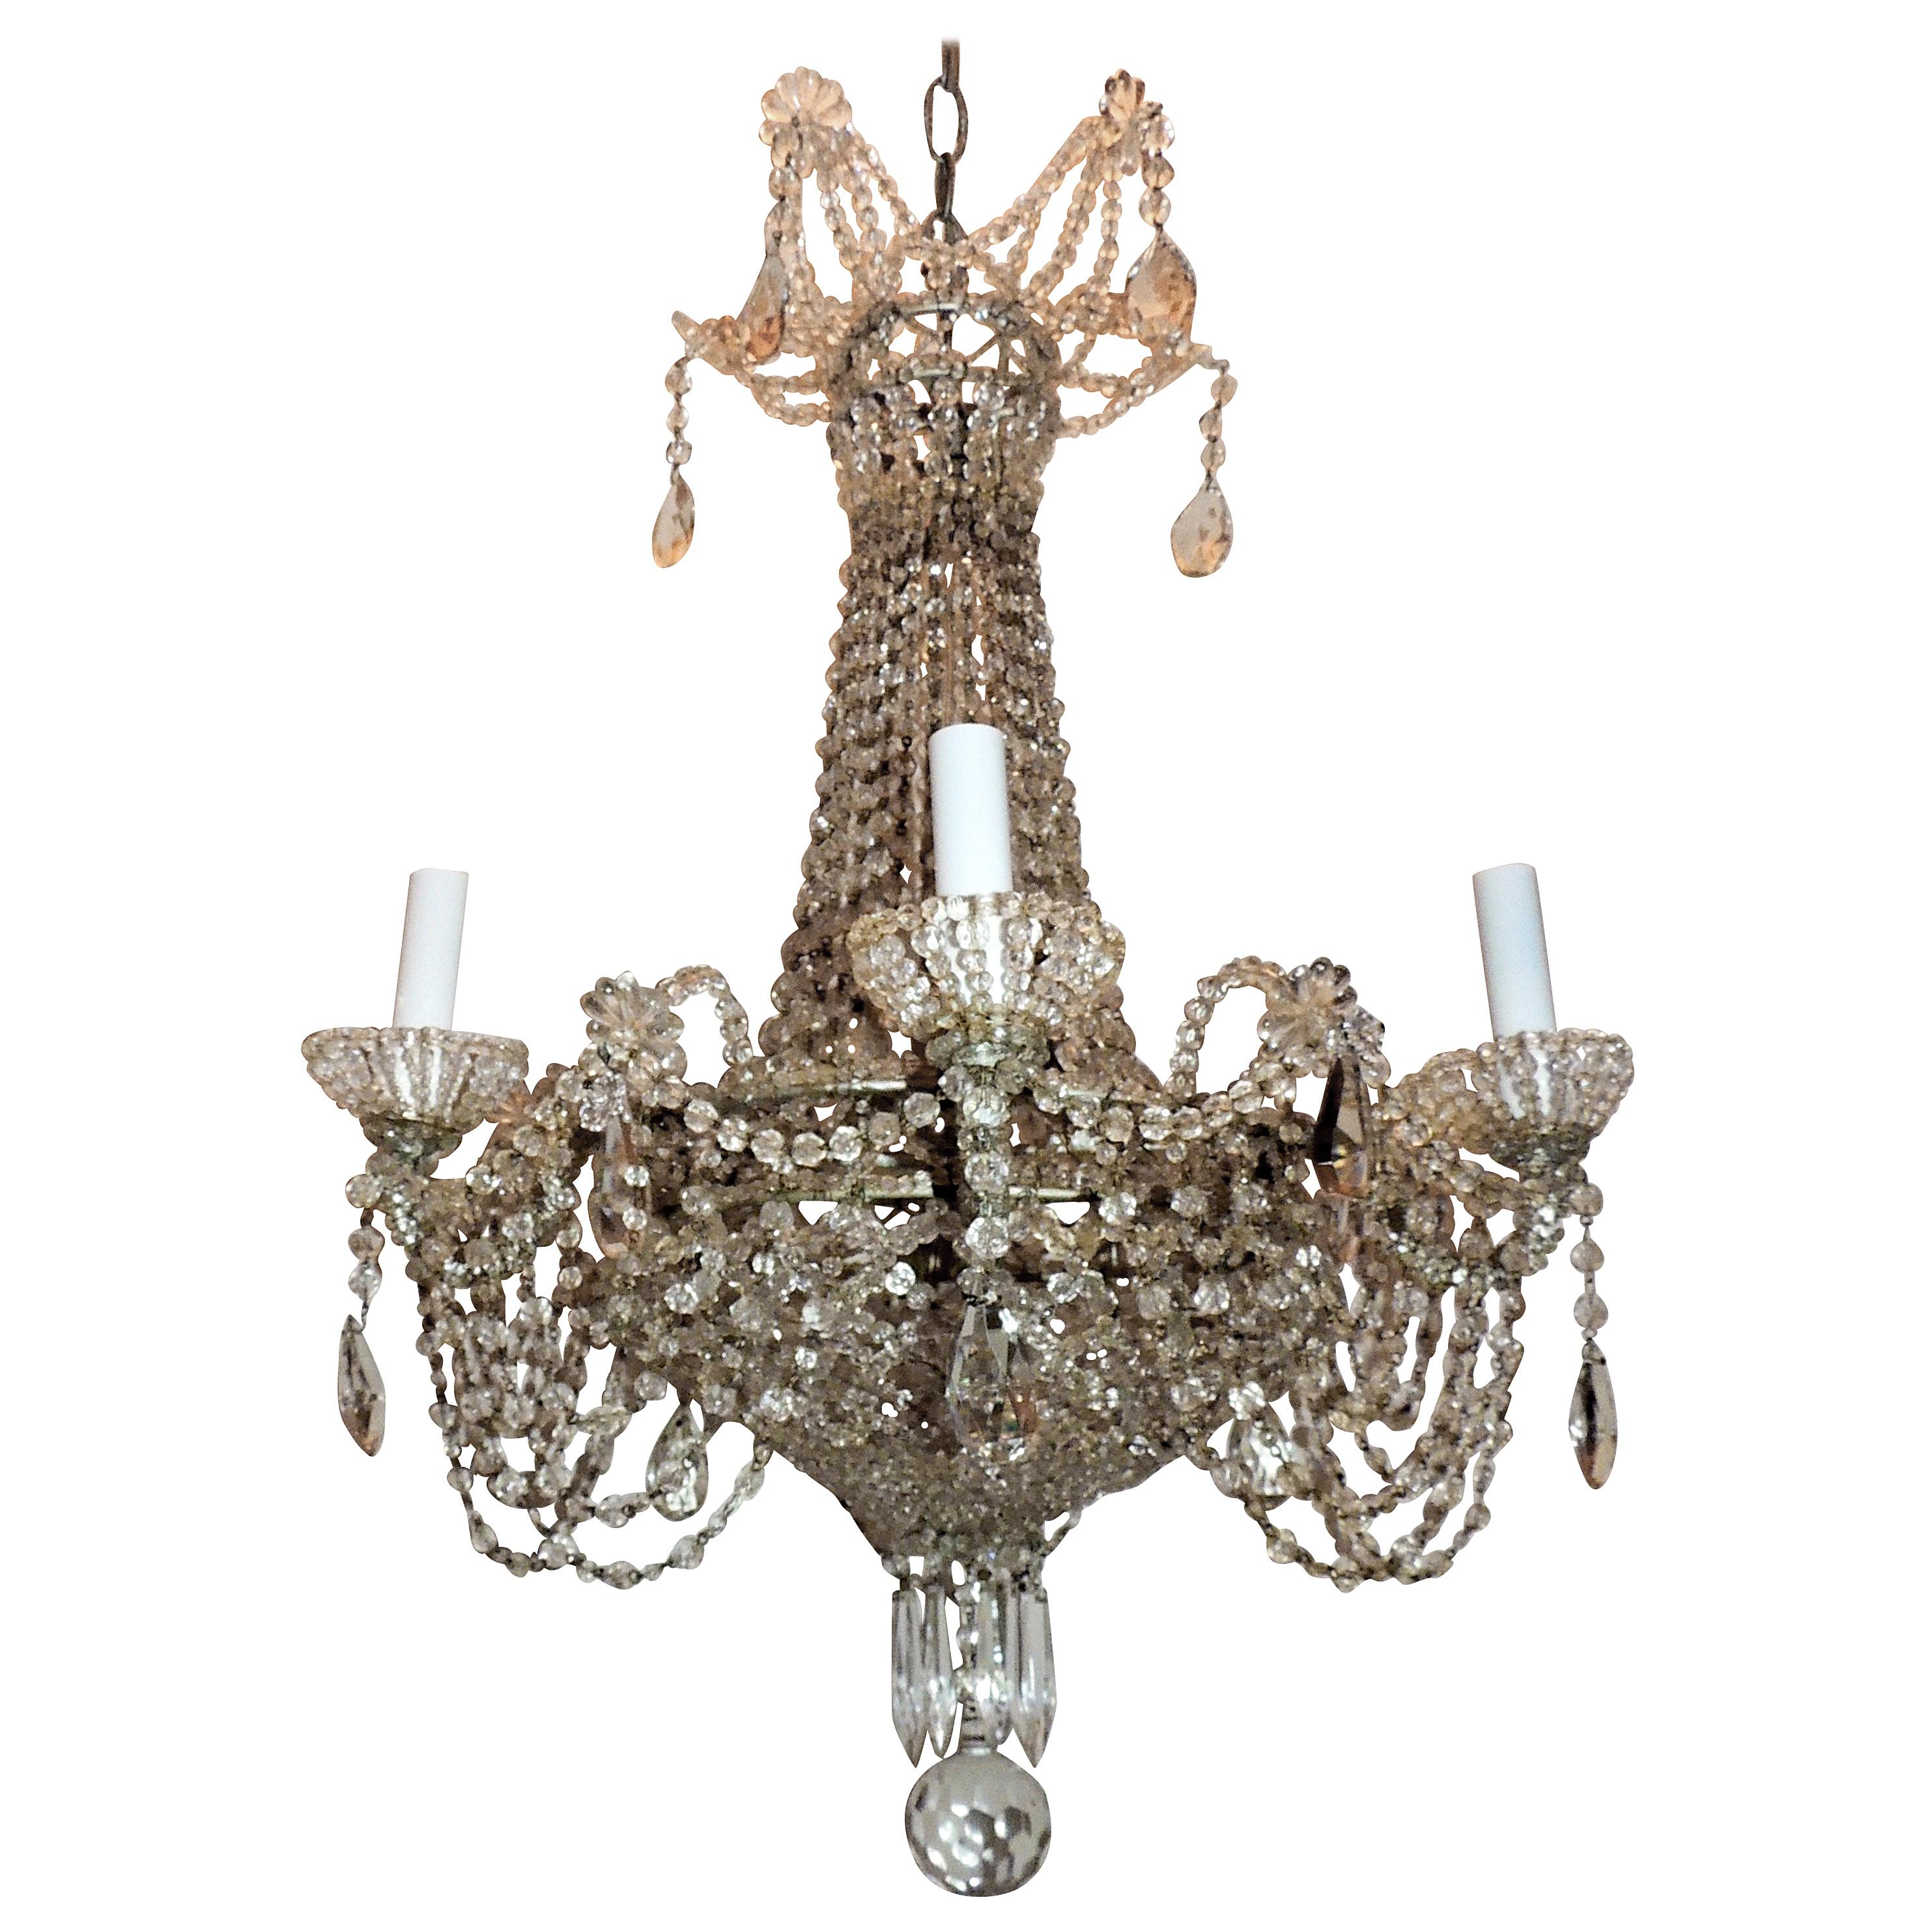 Kaskadenförmige französische Swag-Kronleuchter-Leuchte mit Perlen und Kristallkorb